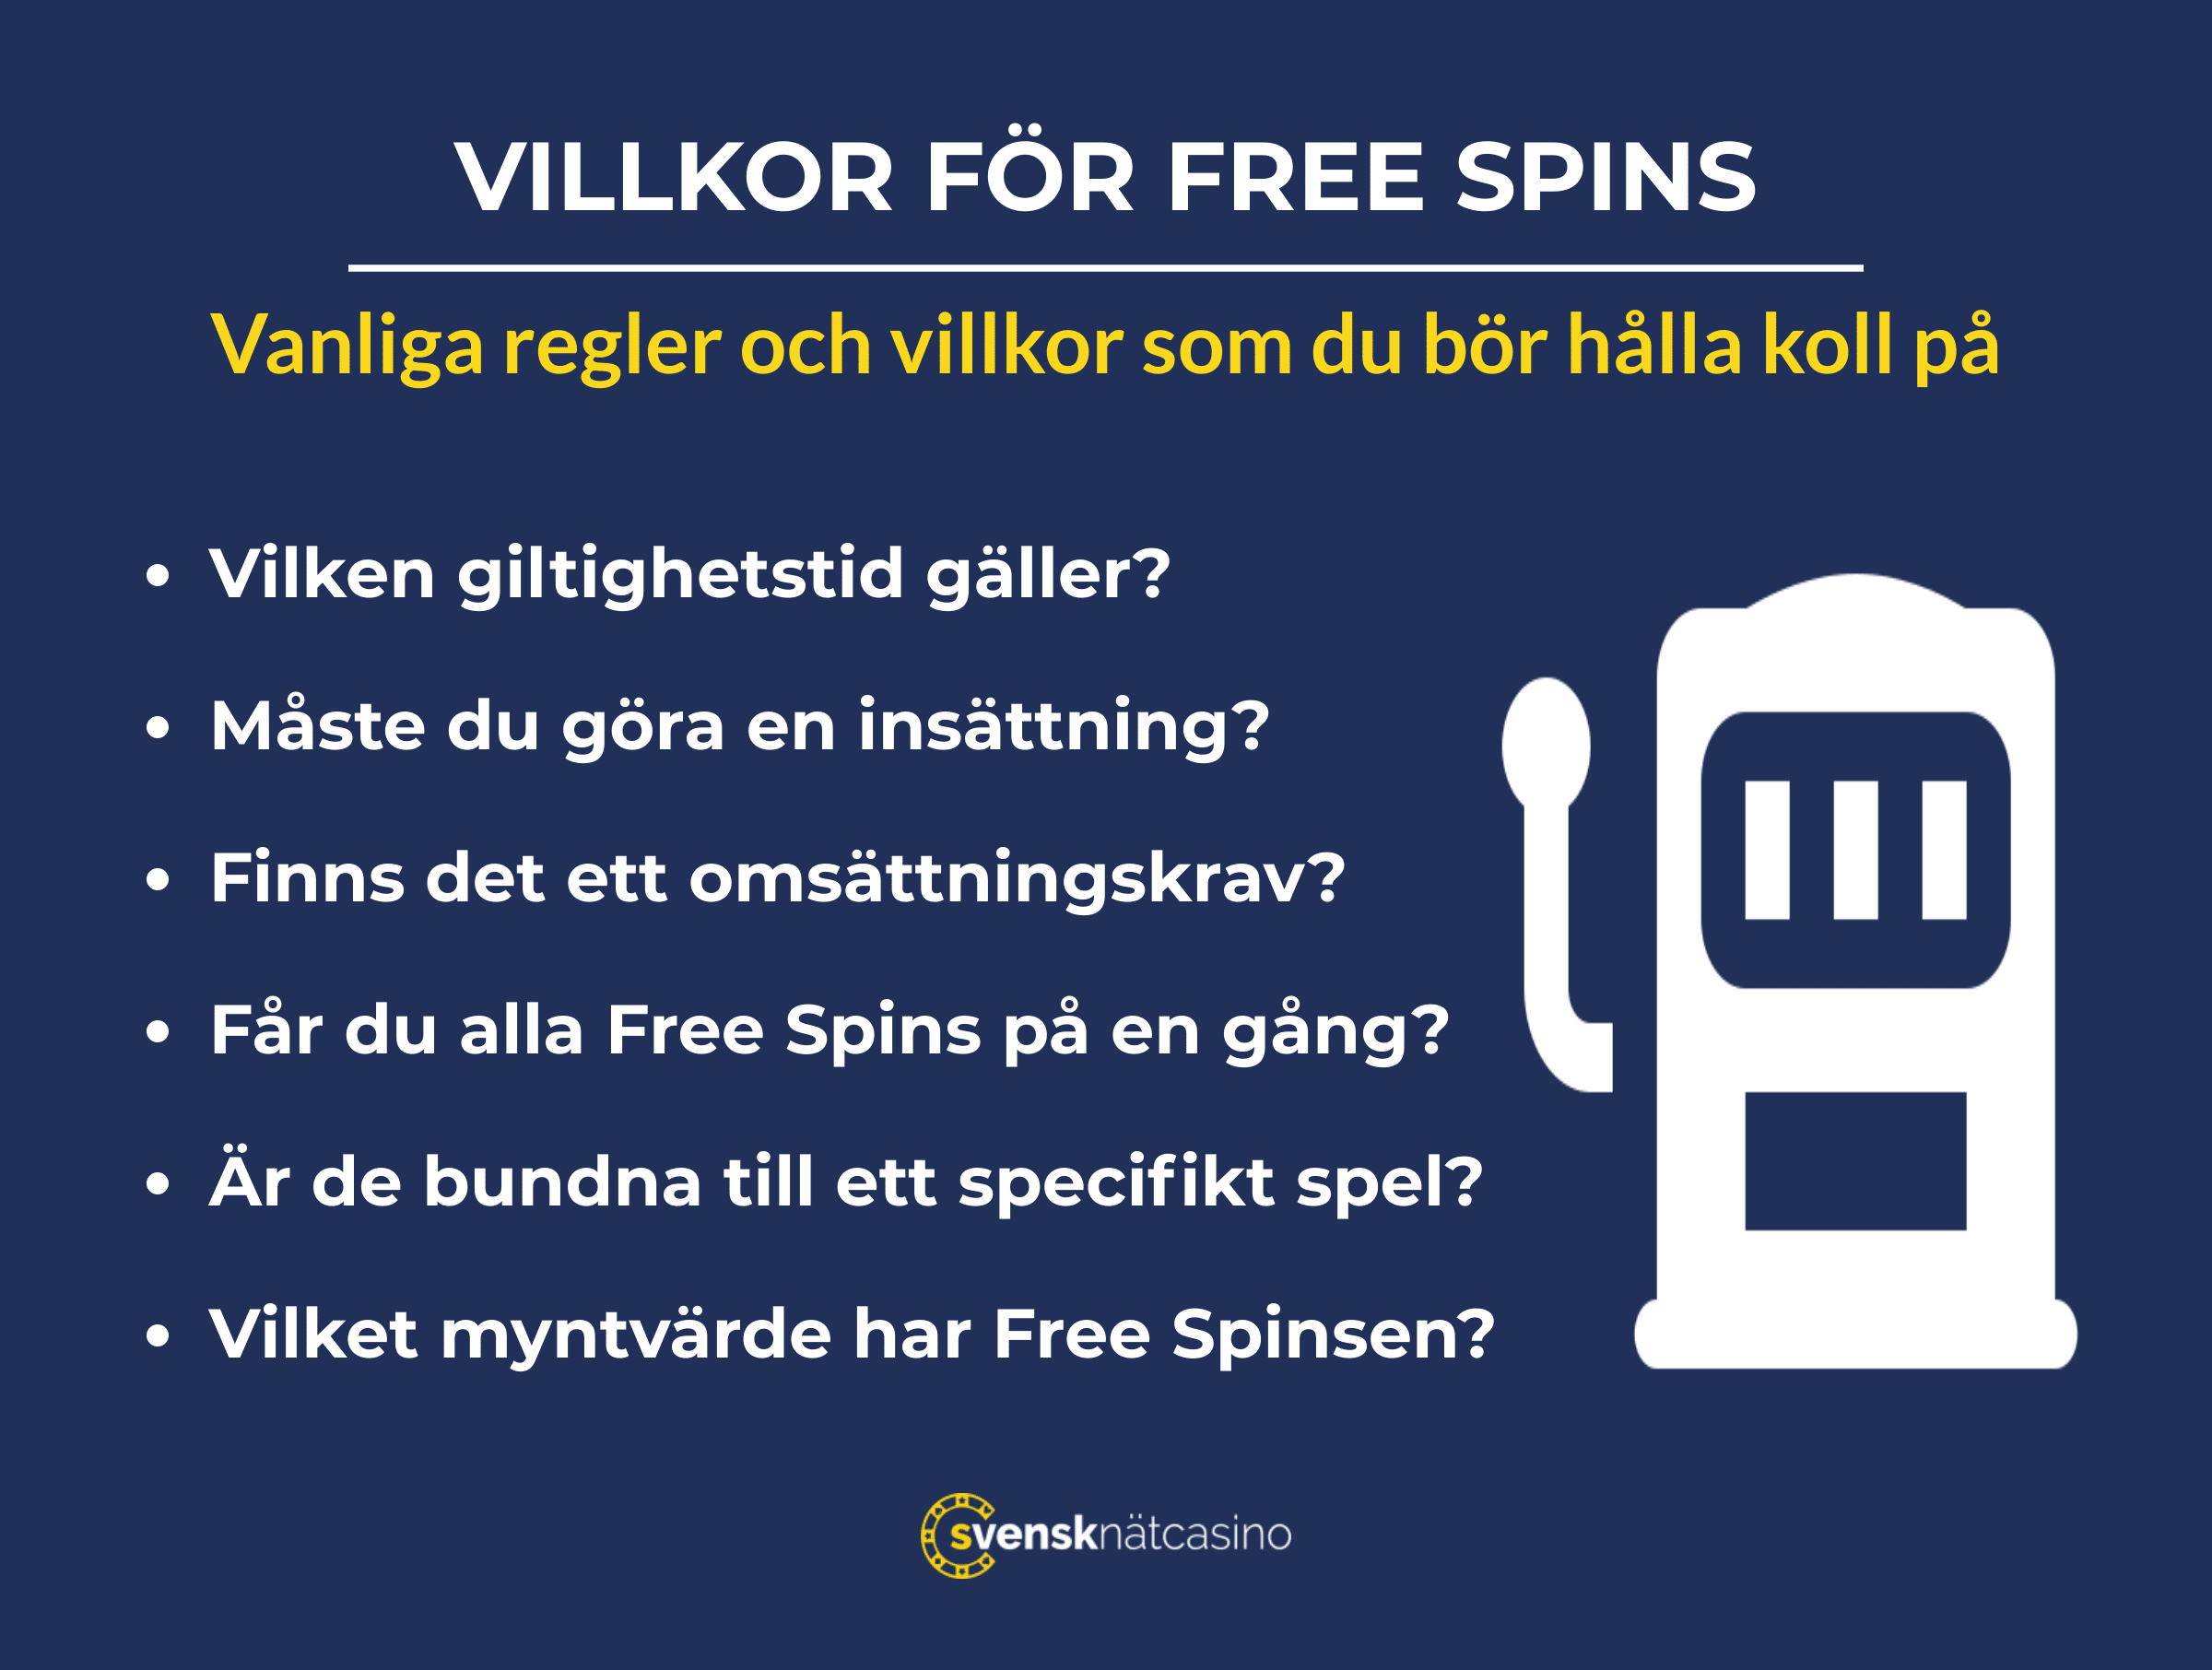 villkor for free spins att halla koll pa svensknatcasino